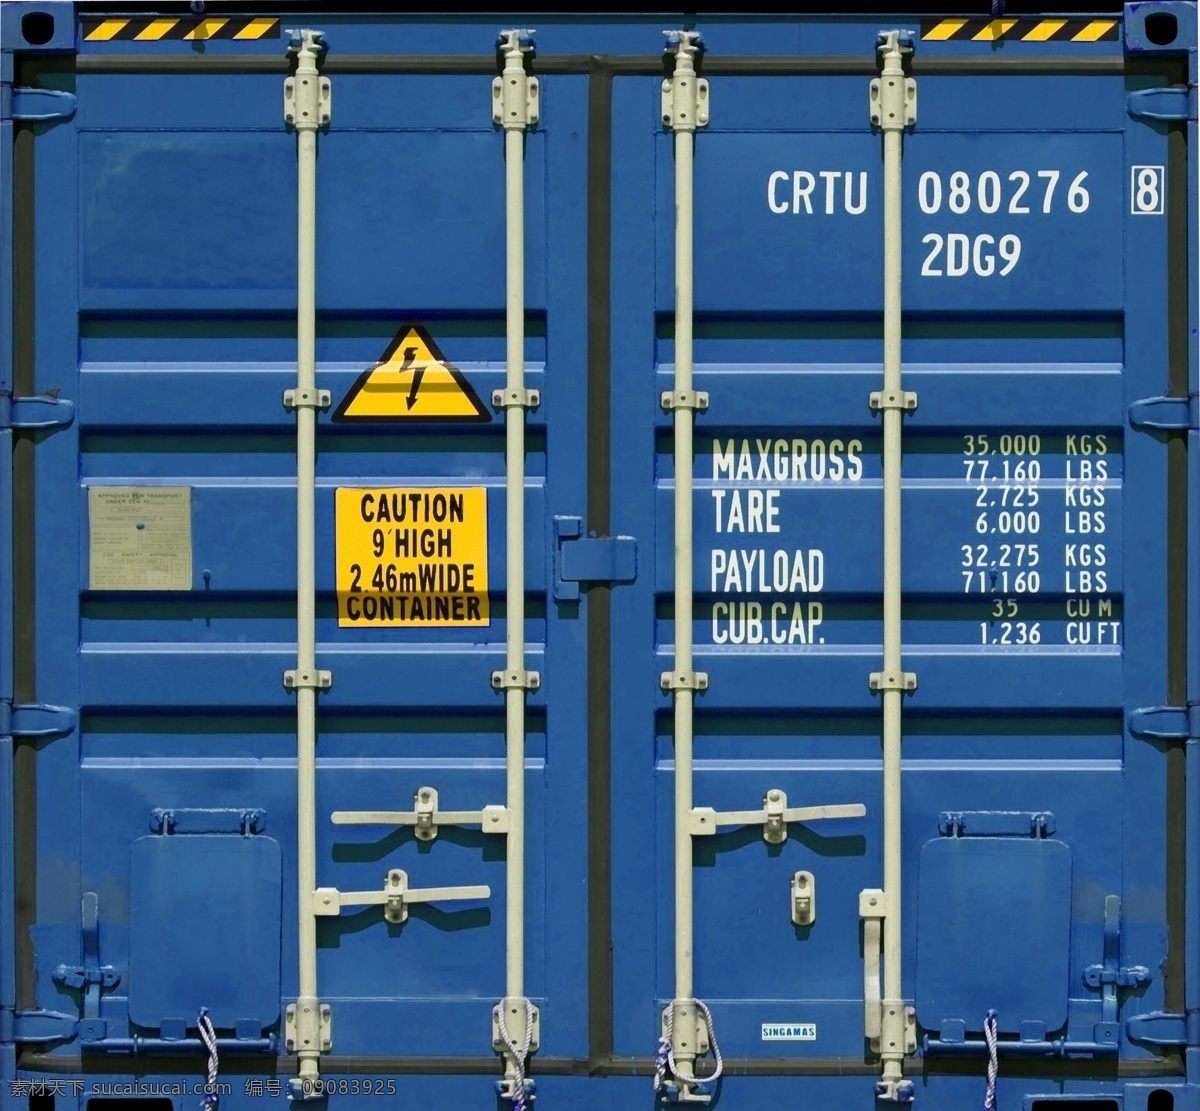 集装箱图片 集装箱 运输 物流 货箱 物流运输 交通物流 蓝色集装箱